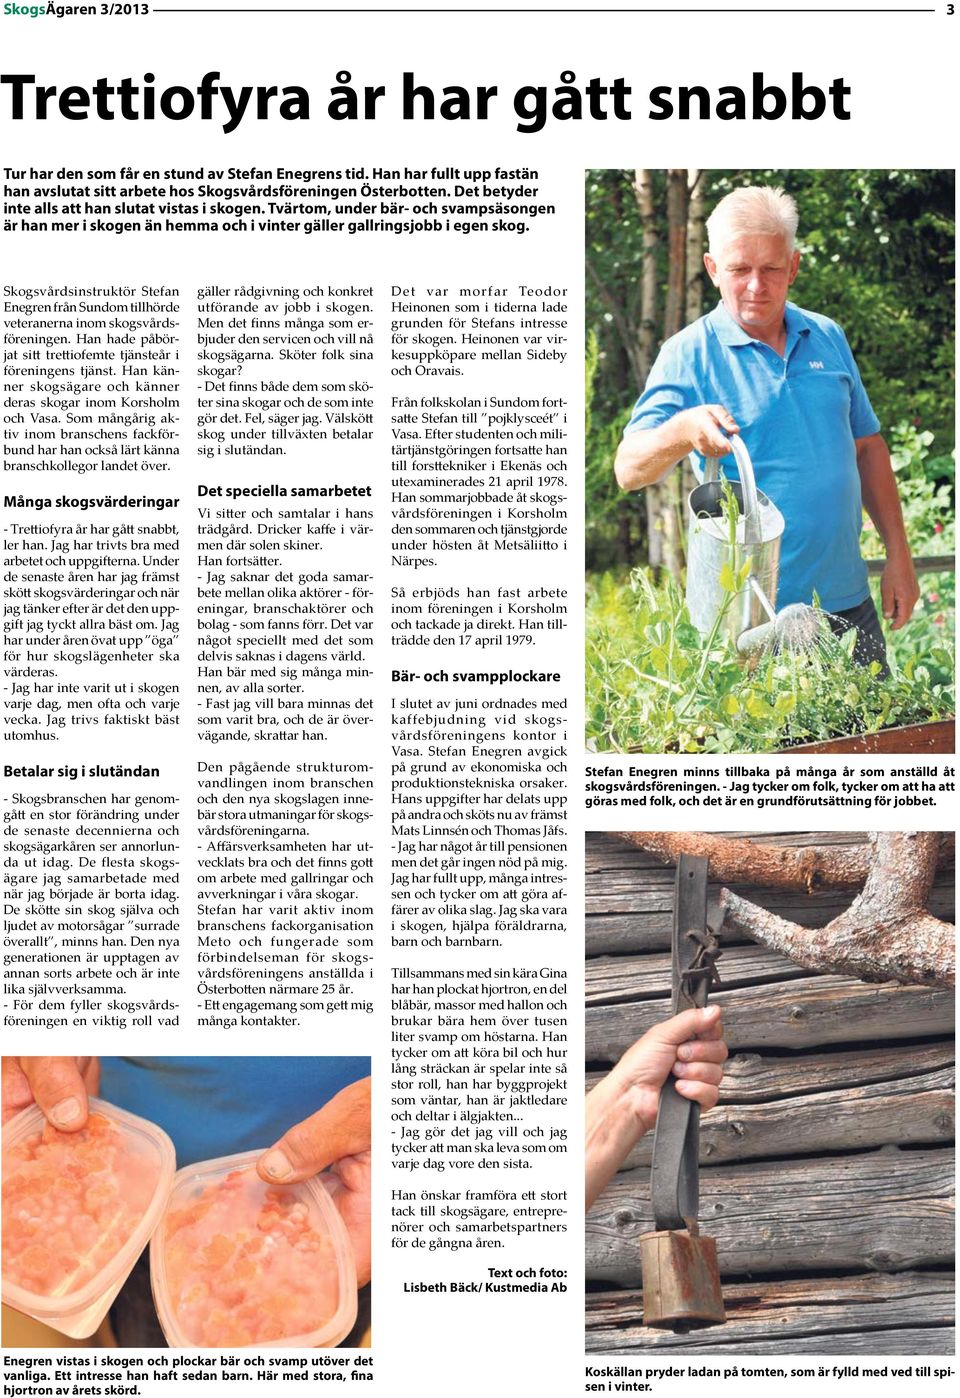 Skogsvårdsinstruktör Stefan Enegren från Sundom tillhörde veteranerna inom skogsvårdsföreningen. Han hade påbörjat sitt trettiofemte tjänsteår i föreningens tjänst.